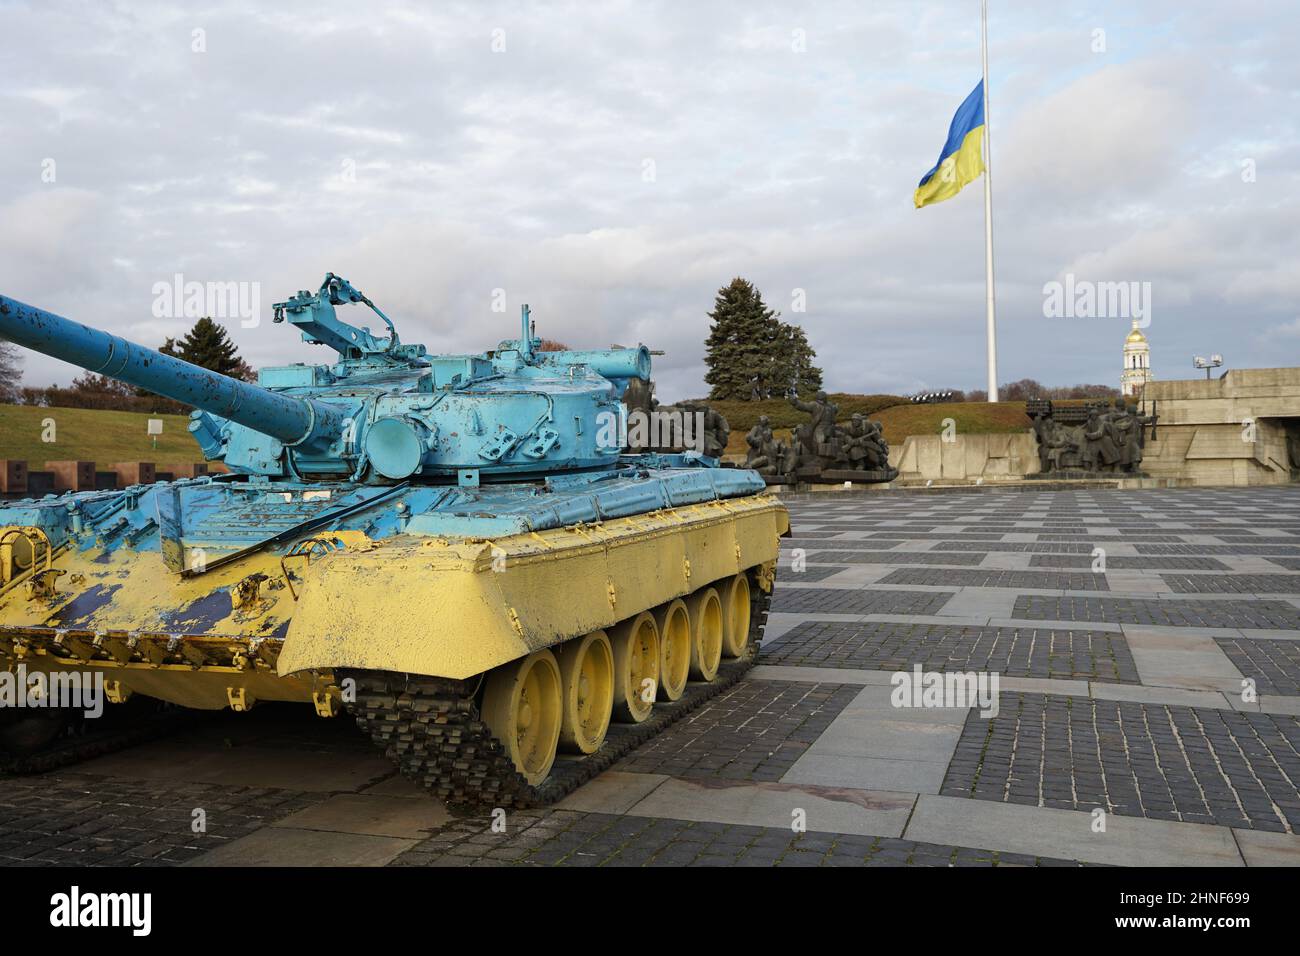 Kiev, Ucraina - Novembre 22 2021: Russia Ucraina guerra, giallo e blu serbatoio di fronte al flagpole ucraino, crisi russo-ucraino Foto Stock